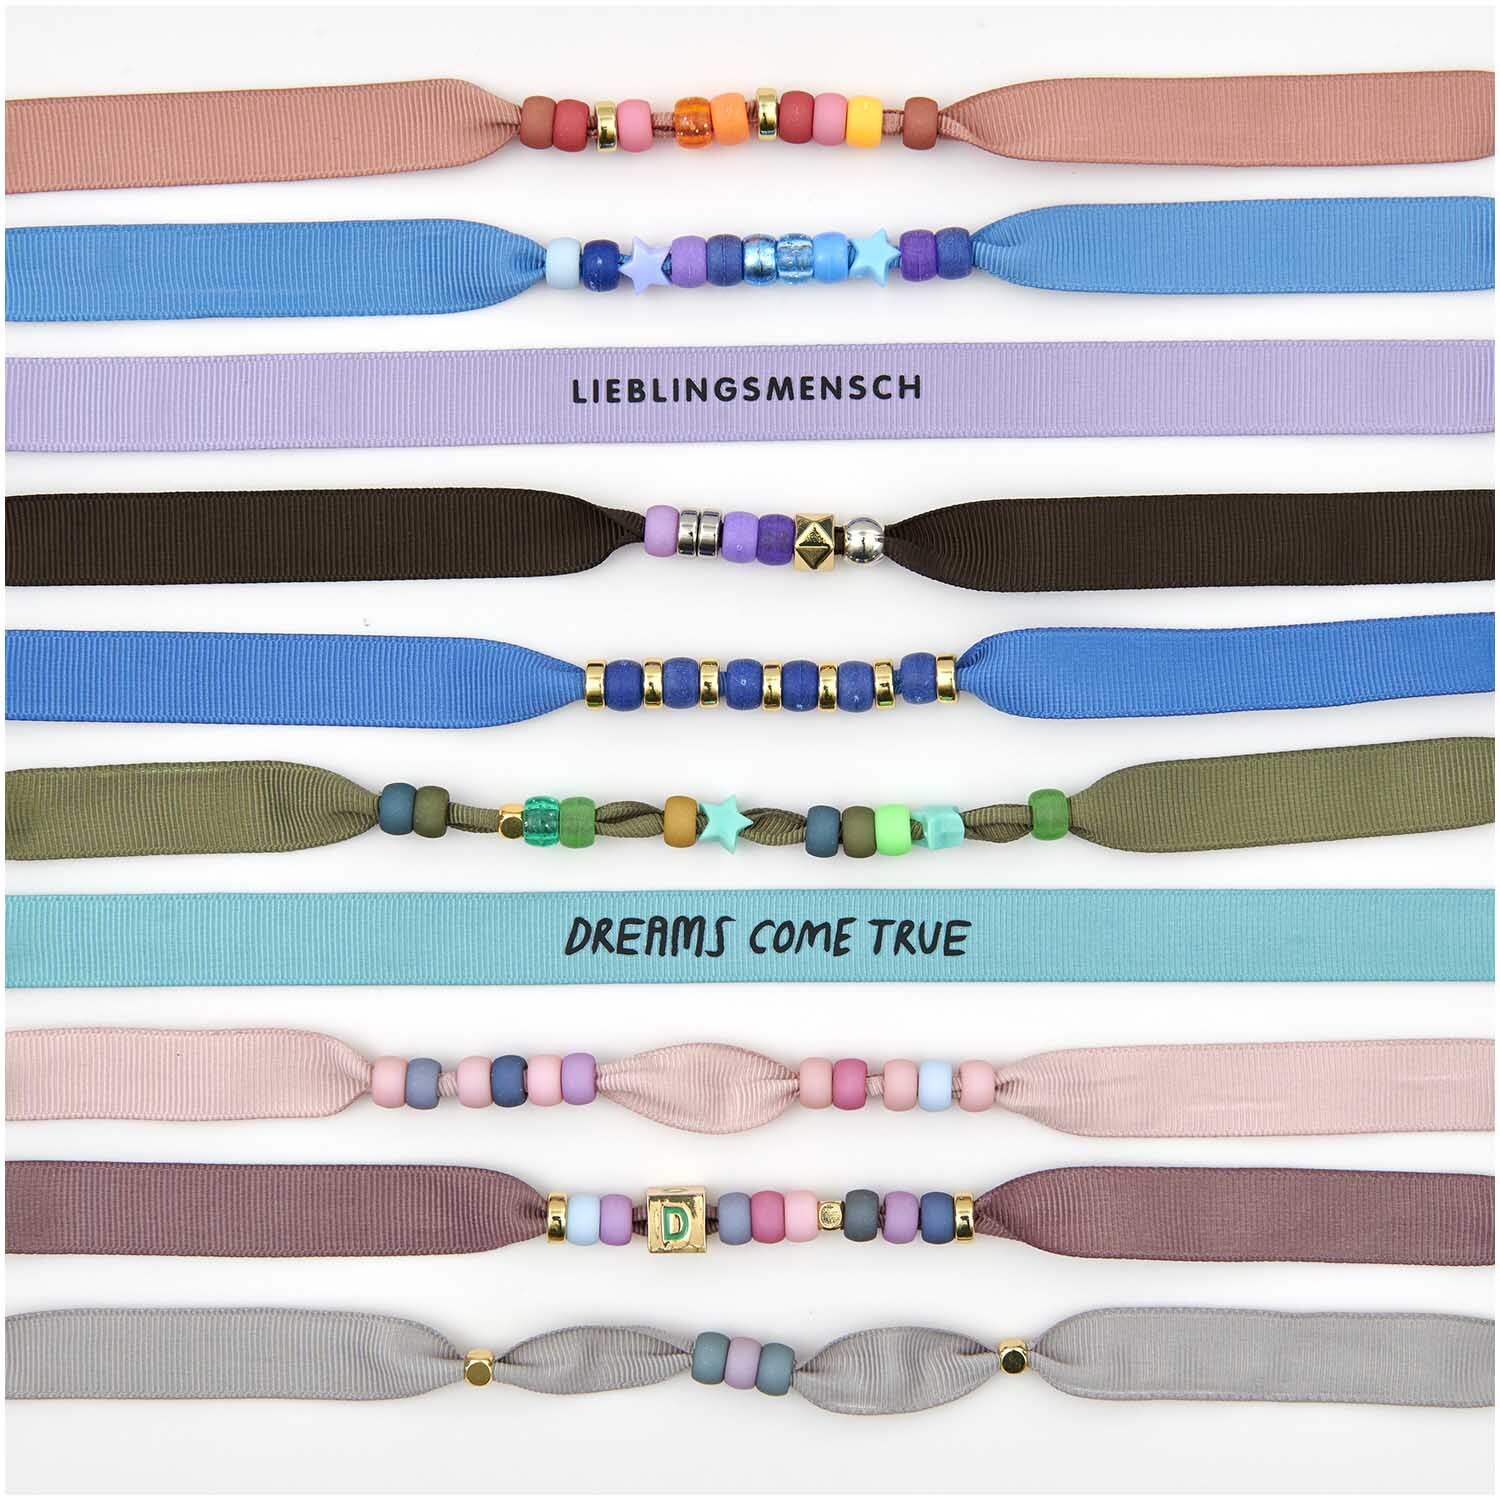 itoshii - Ponii Beads Ripsband Armbänder Erdfarben 10 Stück